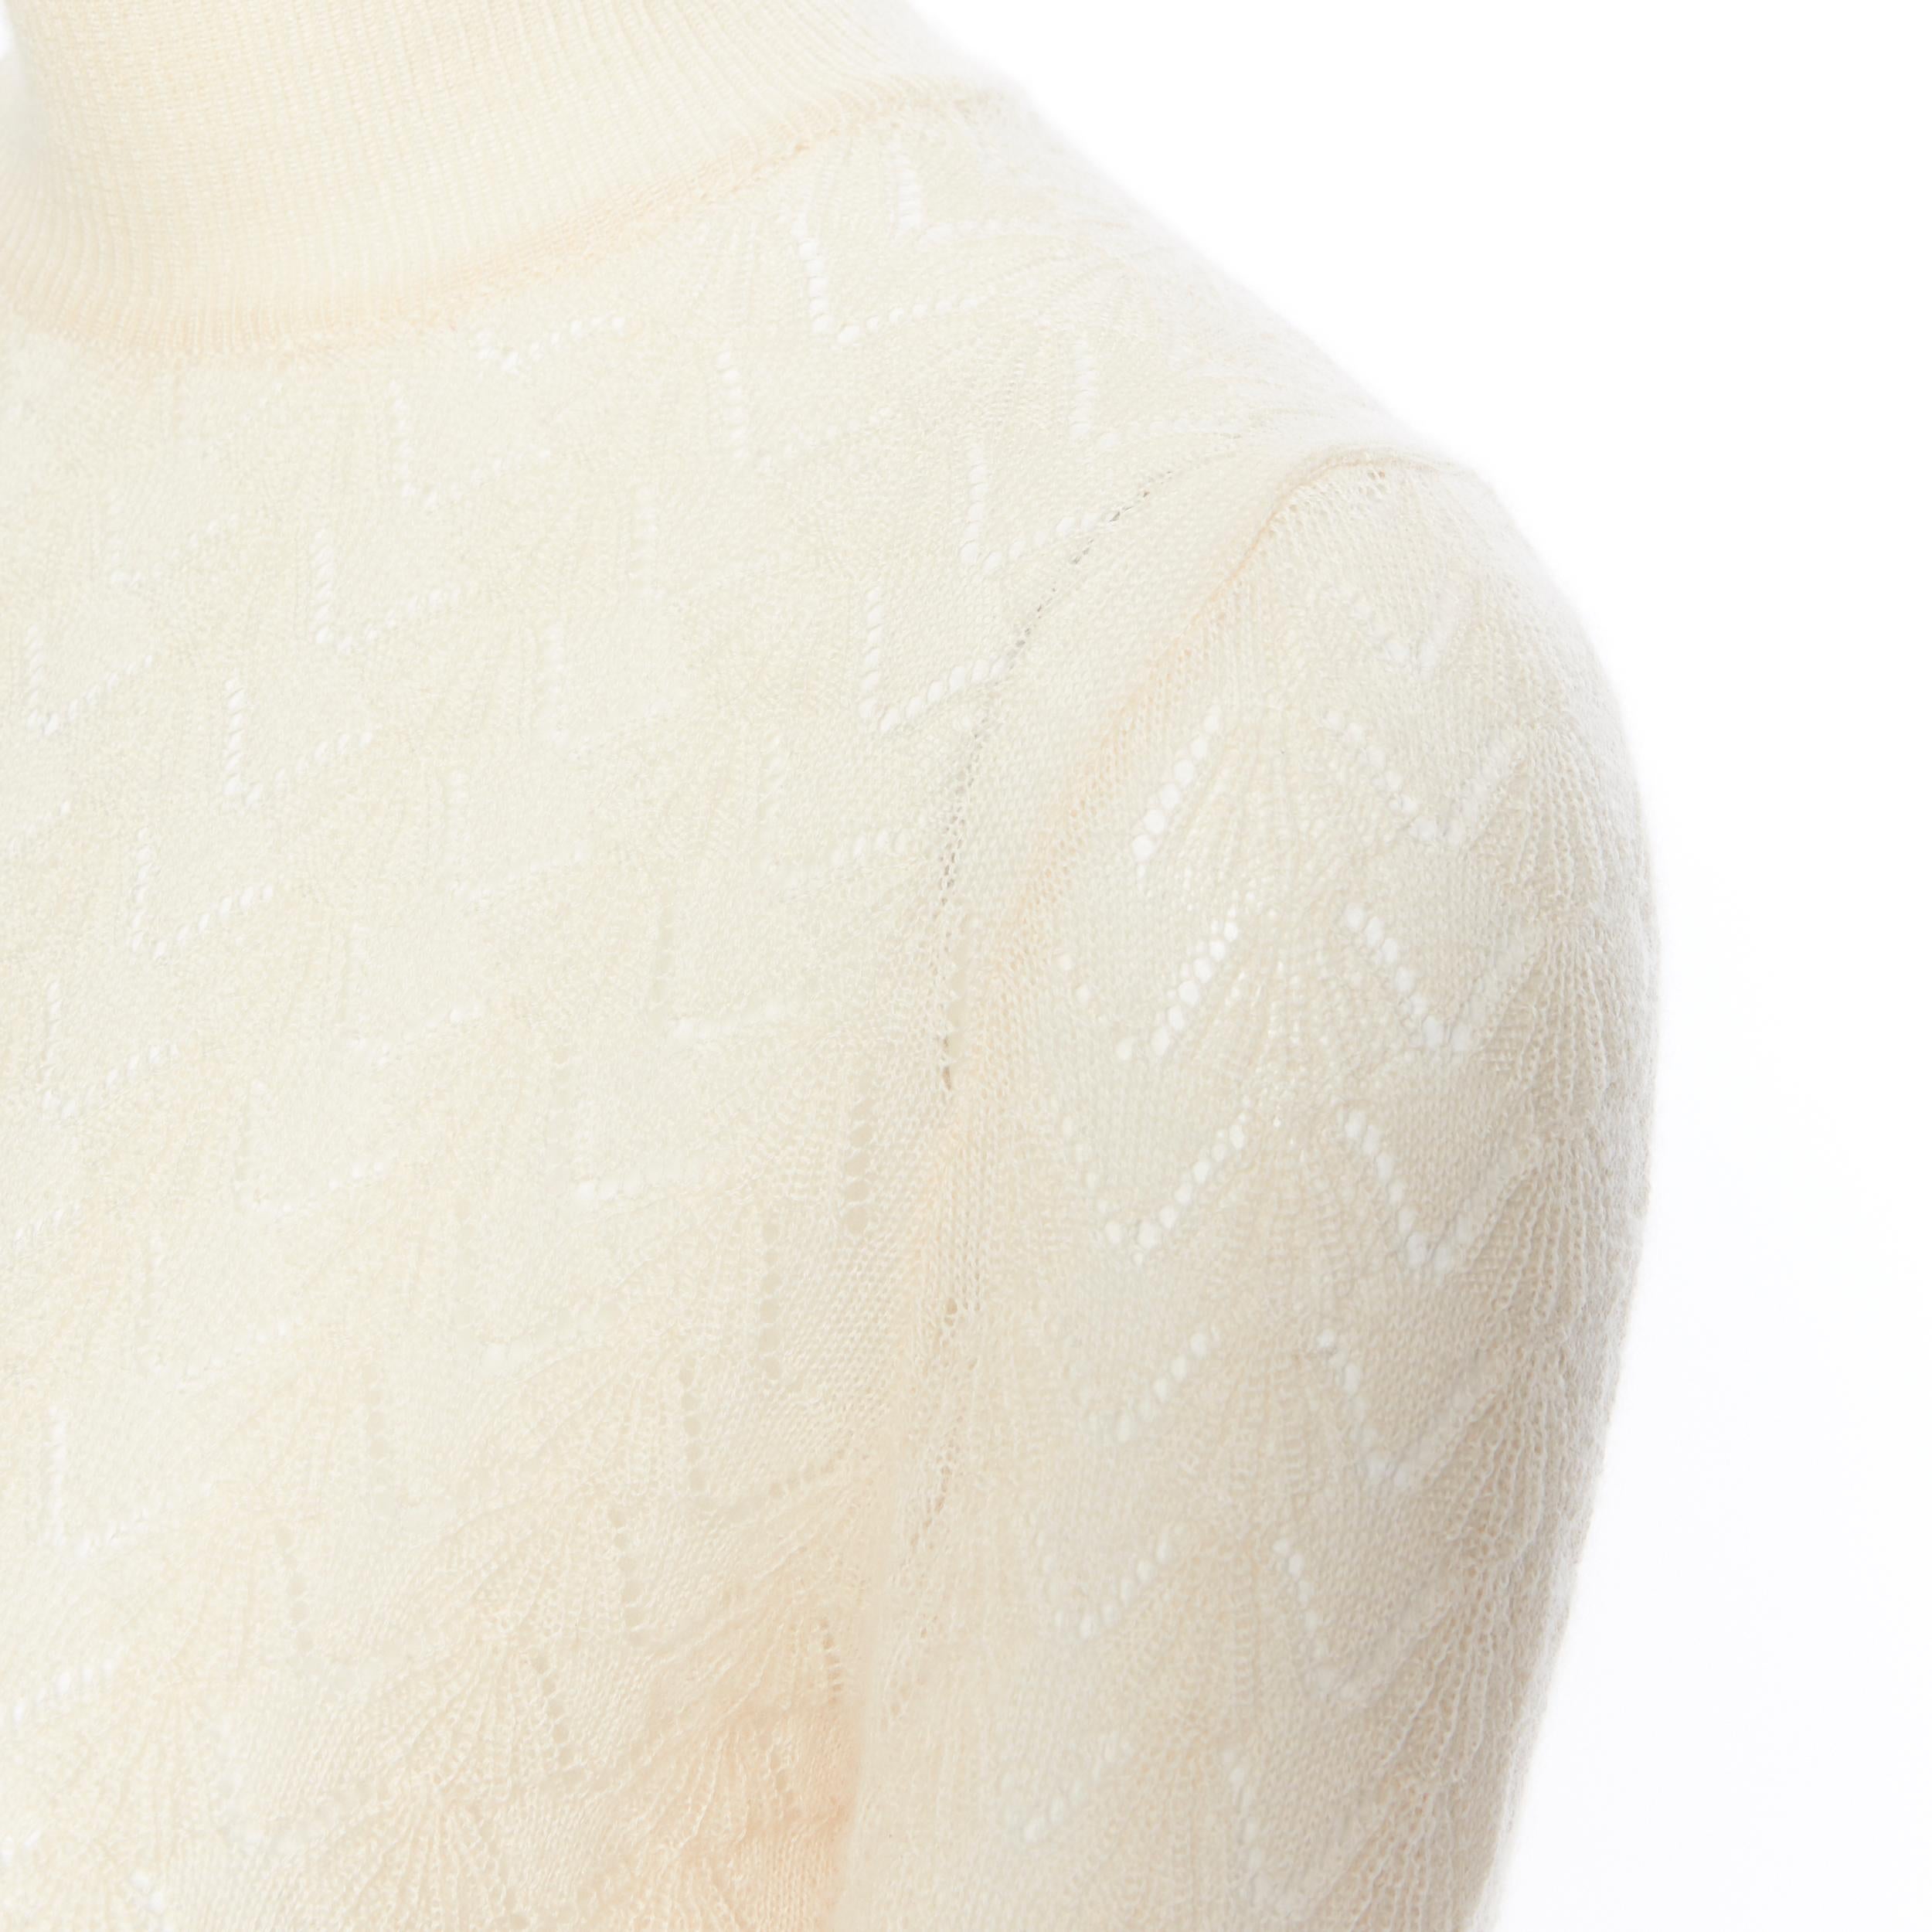 LOUIS VUITTON 100% cashmere cream beige lace knit  turtleneck sweater top M 1